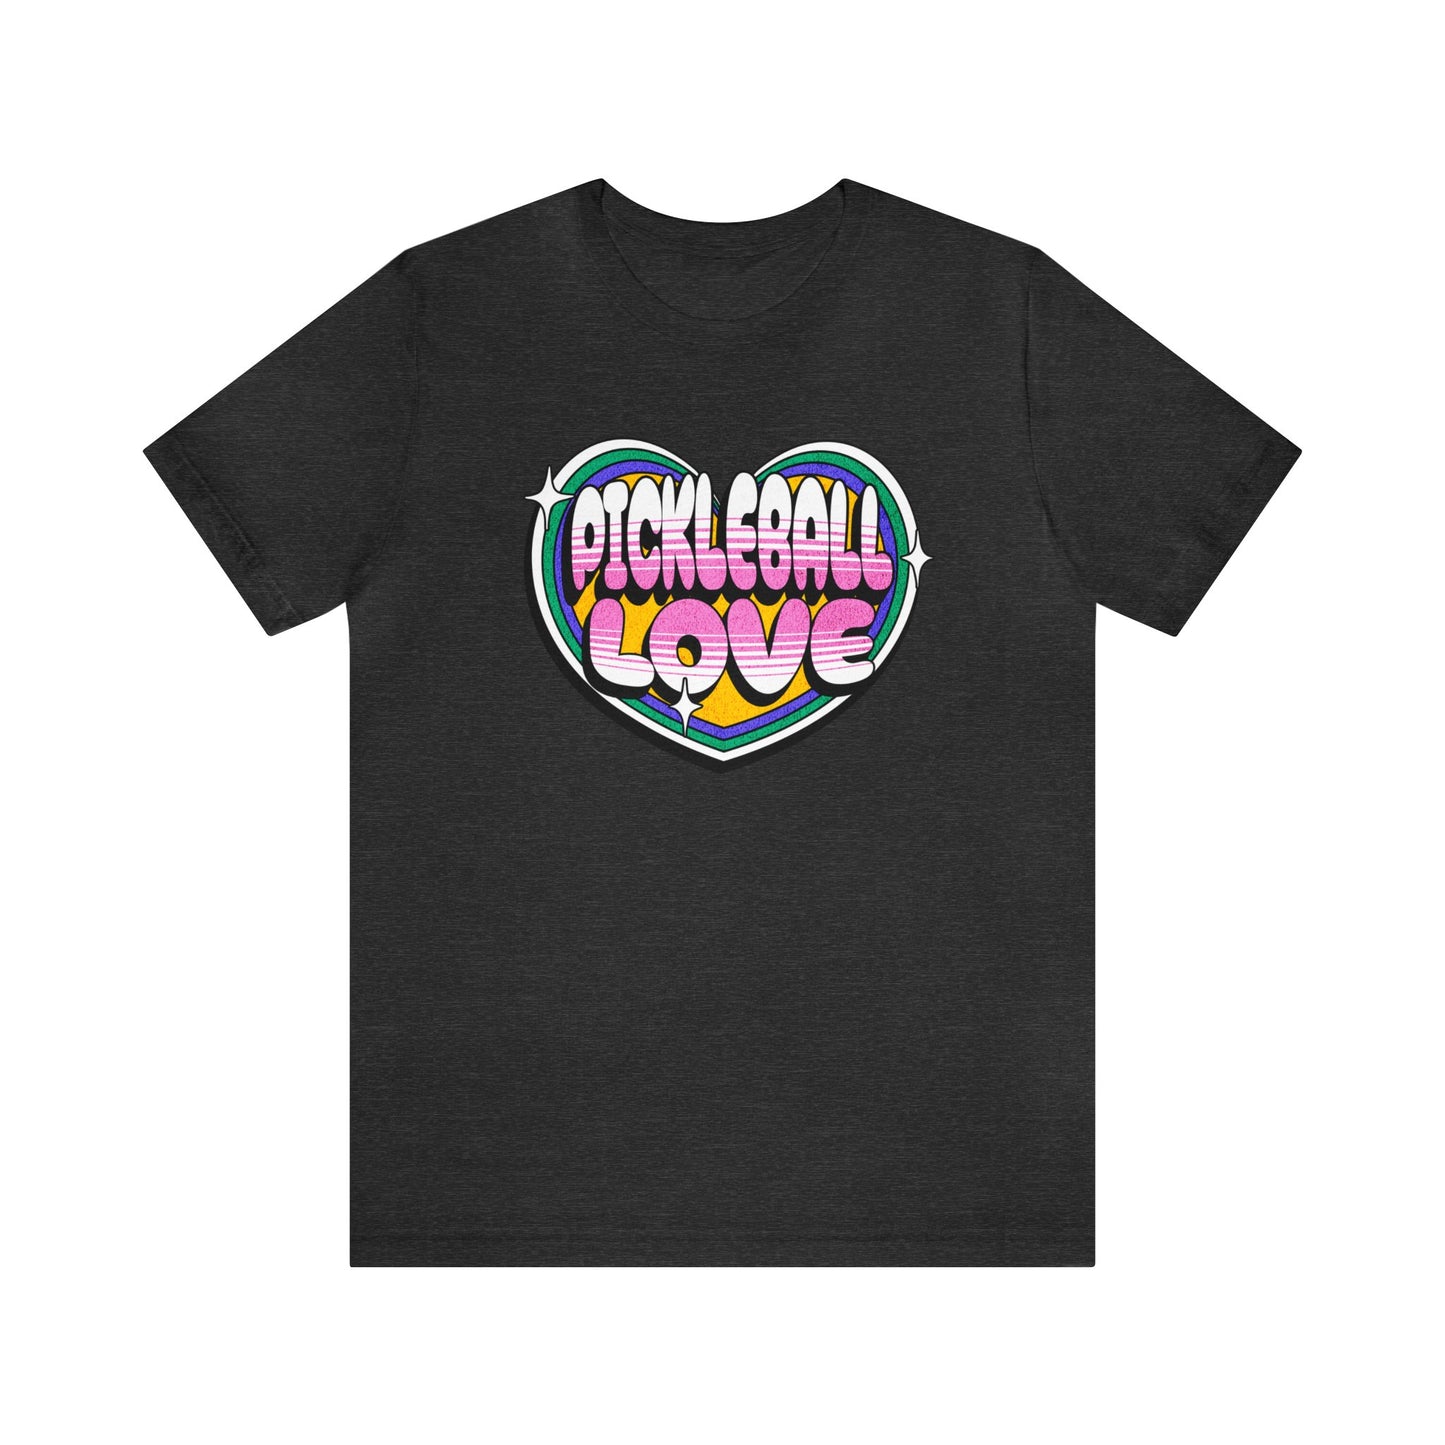 Pickleball Love - Premium Cotton Pickleball Shirt